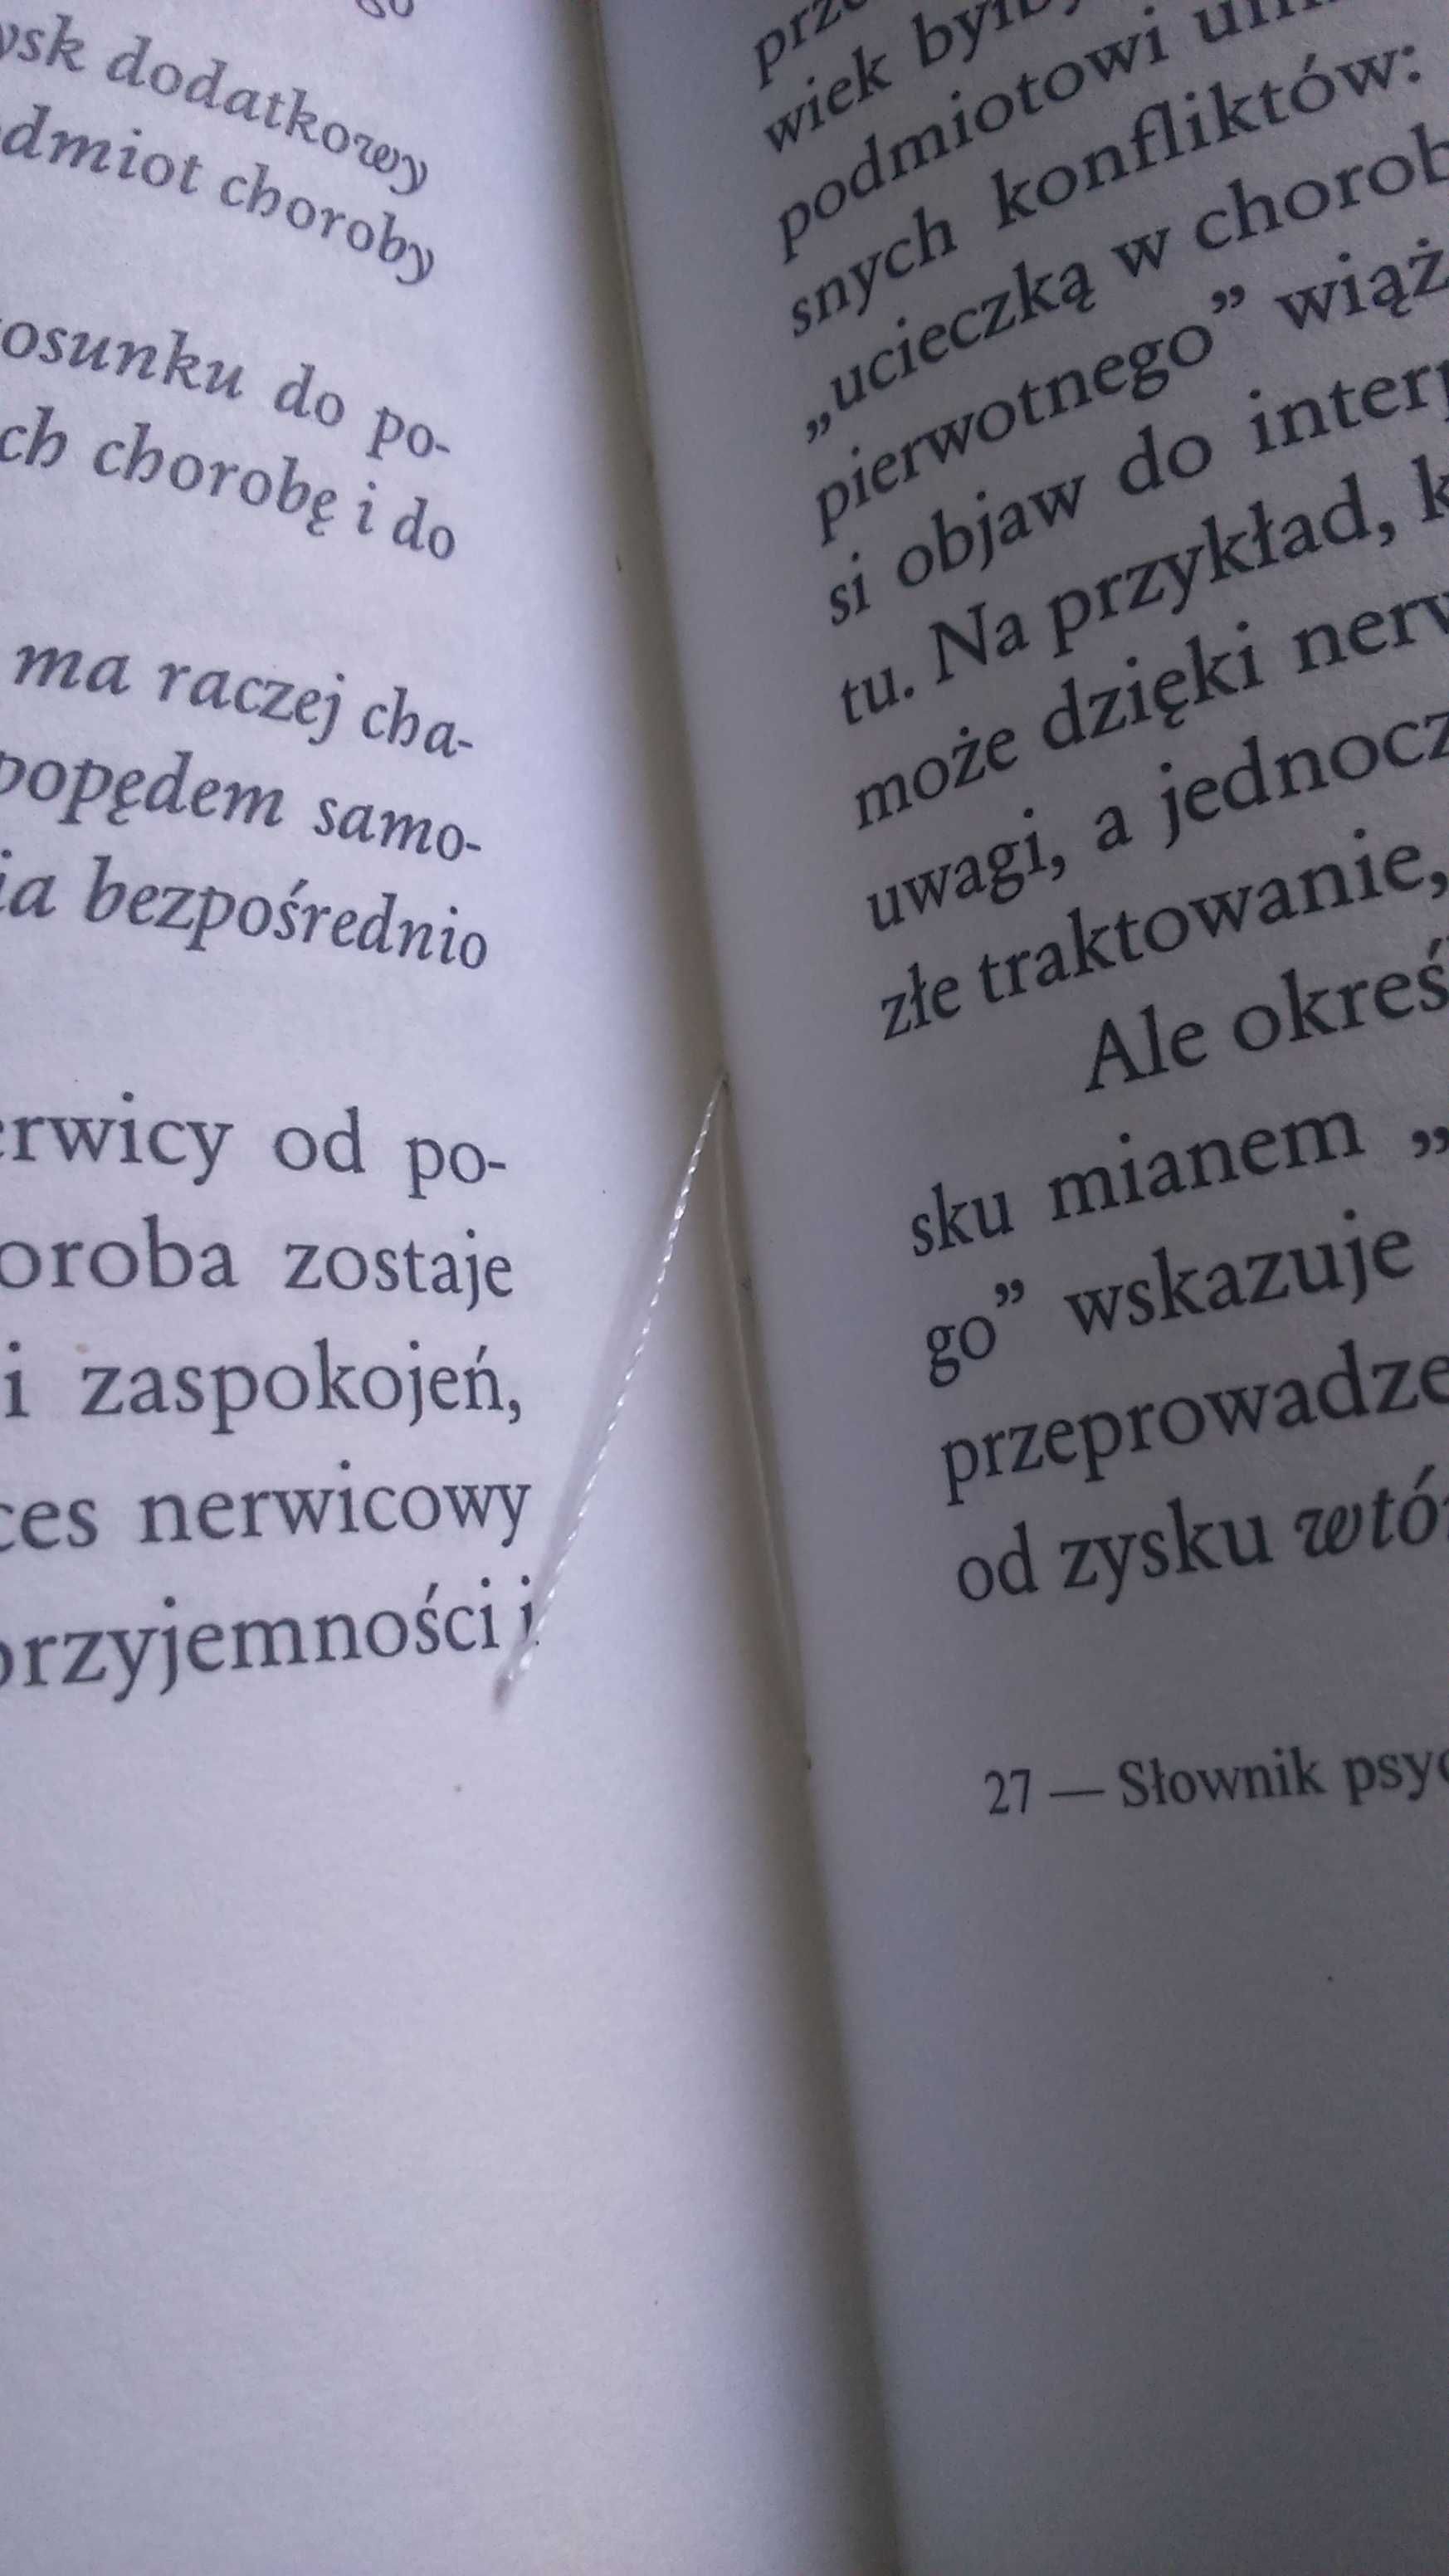 Słownik psychoanalizy / Laplanche Pontalis / Wyd. pierwsze / WSiP 1996